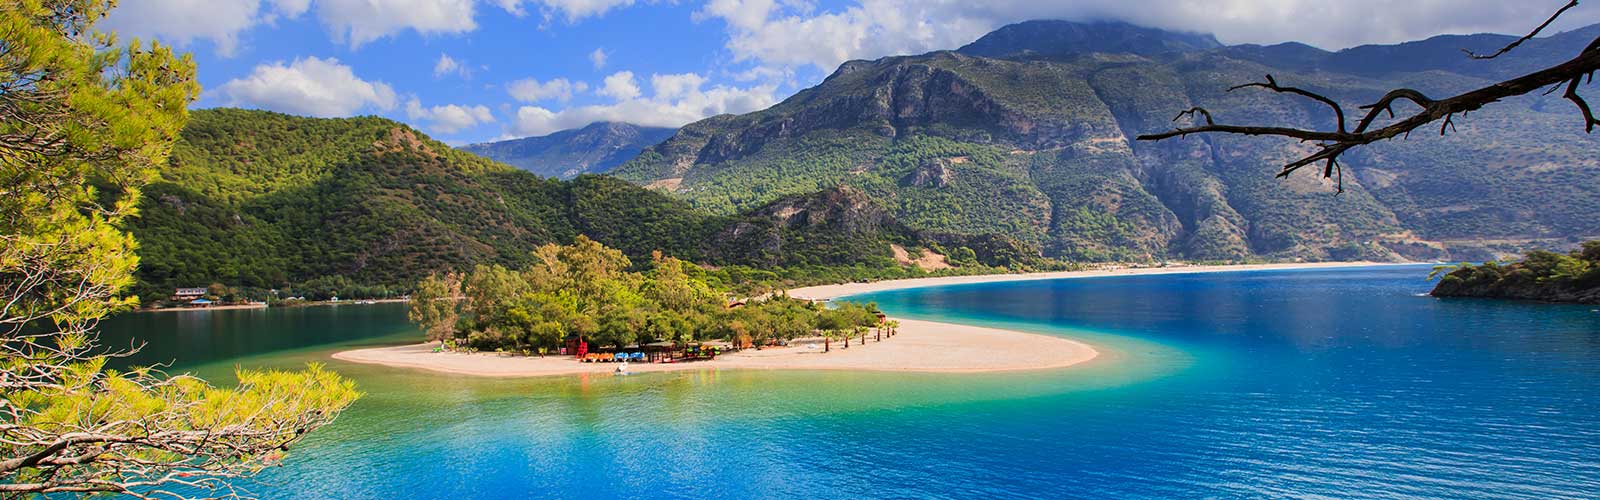 A view of Turkey Mediterranean coast